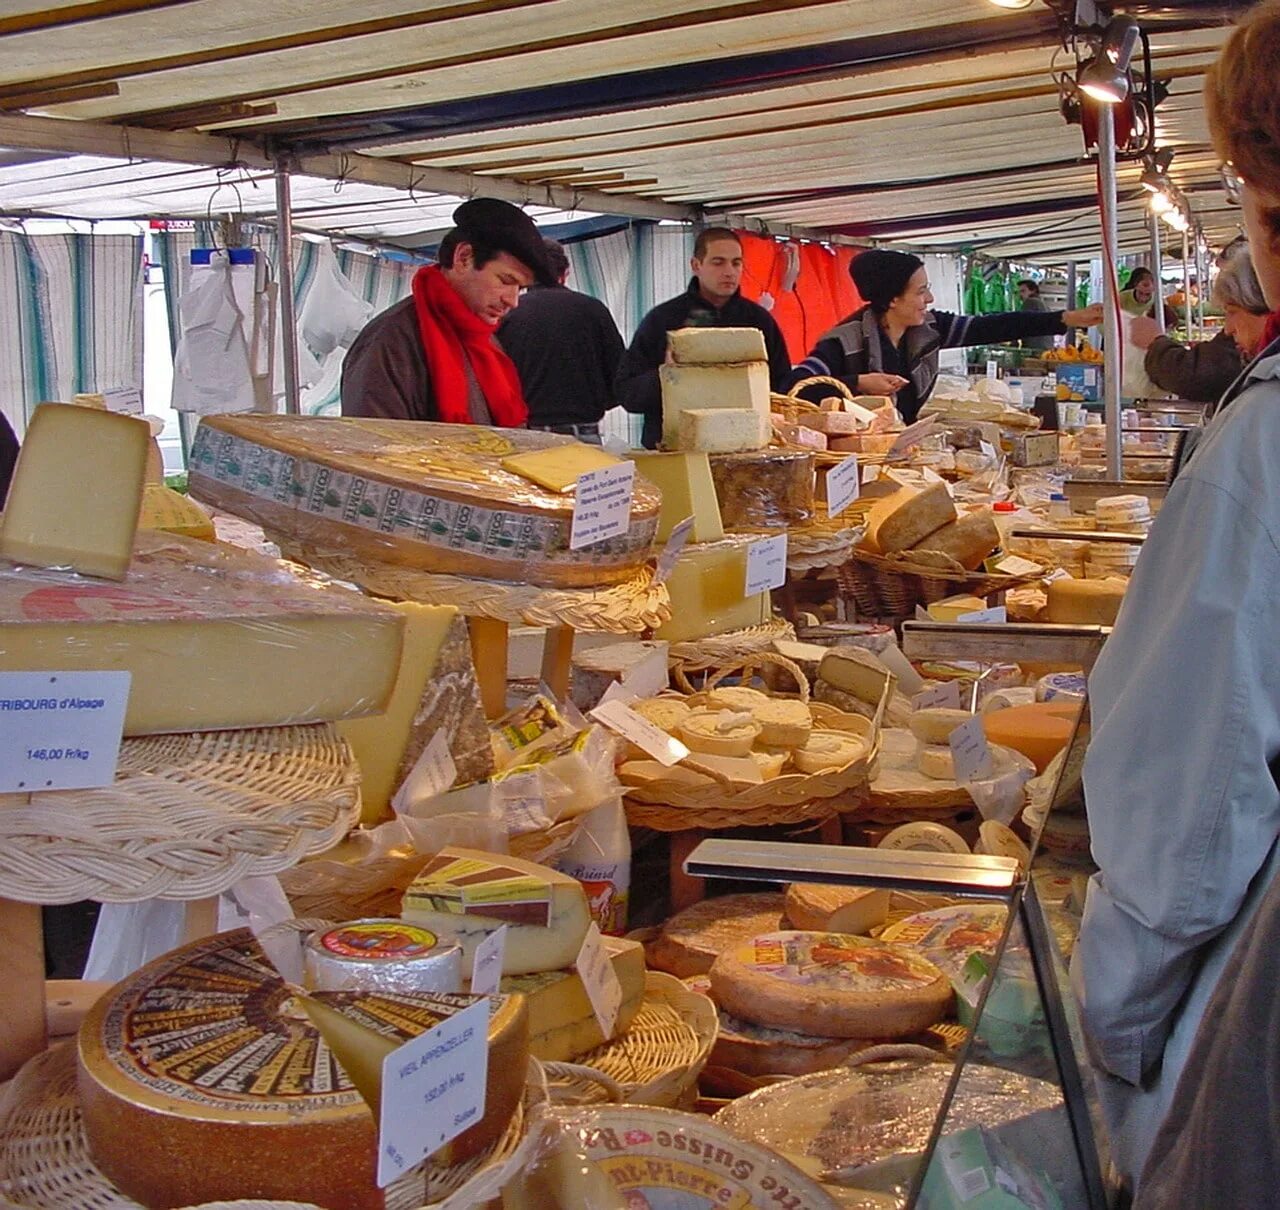 Рынок продуктовый дешево. Paris Market (рынок в Париже). Сырный рынок. Продуктовый рынок во Франции. Сырный рынок Франция.